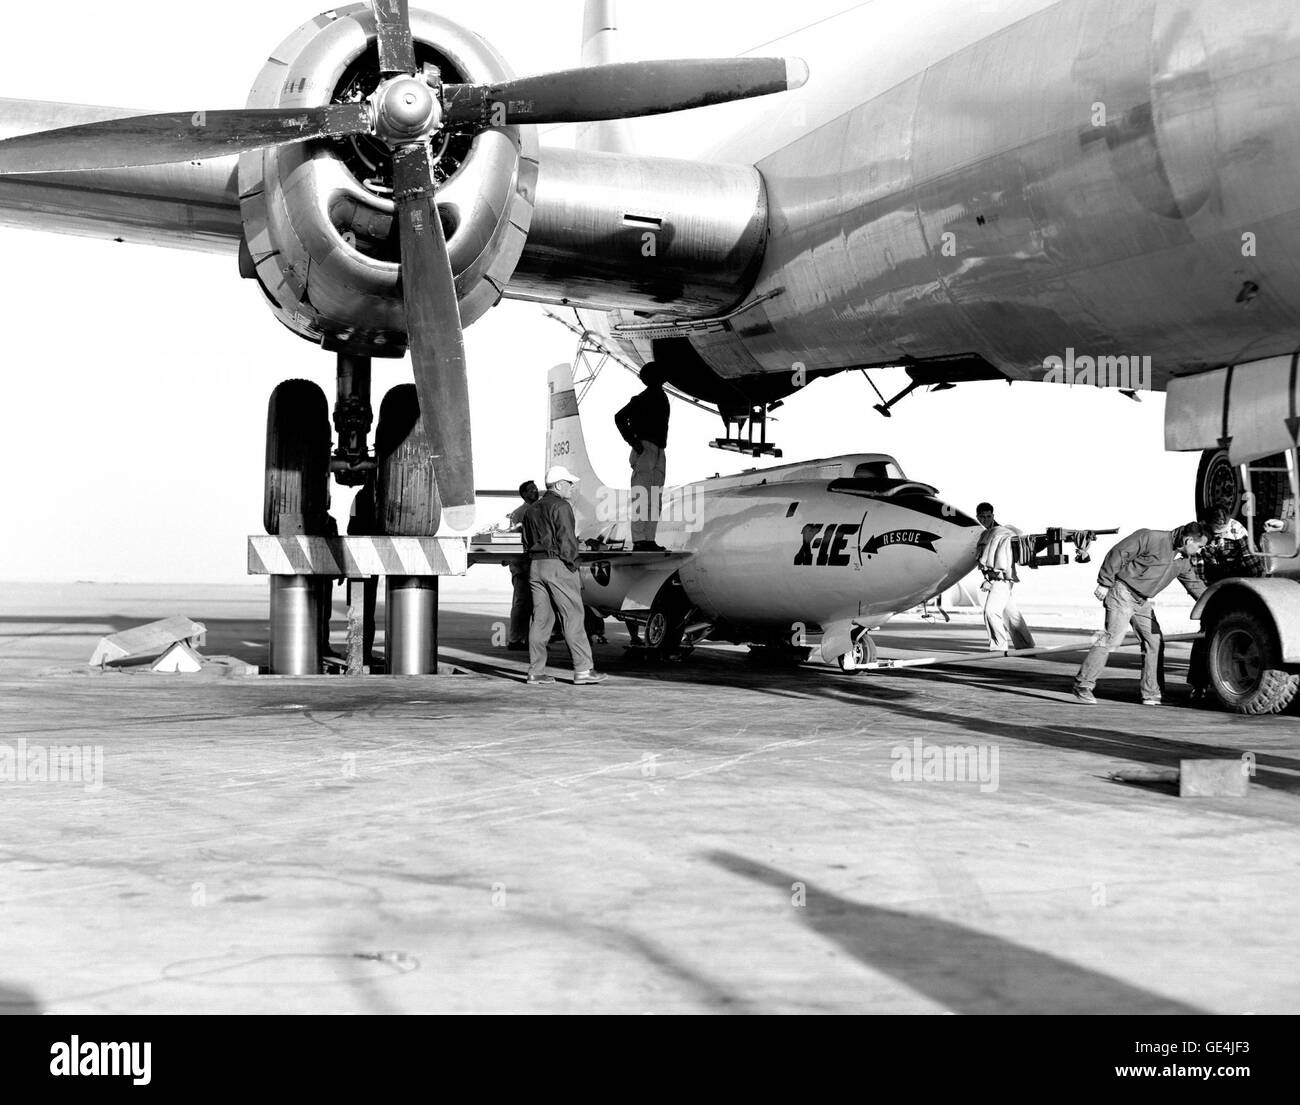 (1955) the Bell Aircraft Corporation X-1E Flugzeug geladen unter dem Mutterschiff, Boeing b-29. Die X-Flugzeuge hatten ursprünglich gesenkt worden, in einem Laden Grube und die Start-Flugzeuge über die Grube, wo das Raketenflugzeug mit Bauch Gurten in den Bombenschacht gehisst wurde abgeschleppt. Bis Anfang der 1950er Jahre wurde eine Hebebühne installiert, auf der Rampe bei der NACA High-Speed Flight Station zu starten Flugzeuge heben und senken Sie es über das Raketenflugzeug zur Paarung.   Bild #: E55-02072 Stockfoto